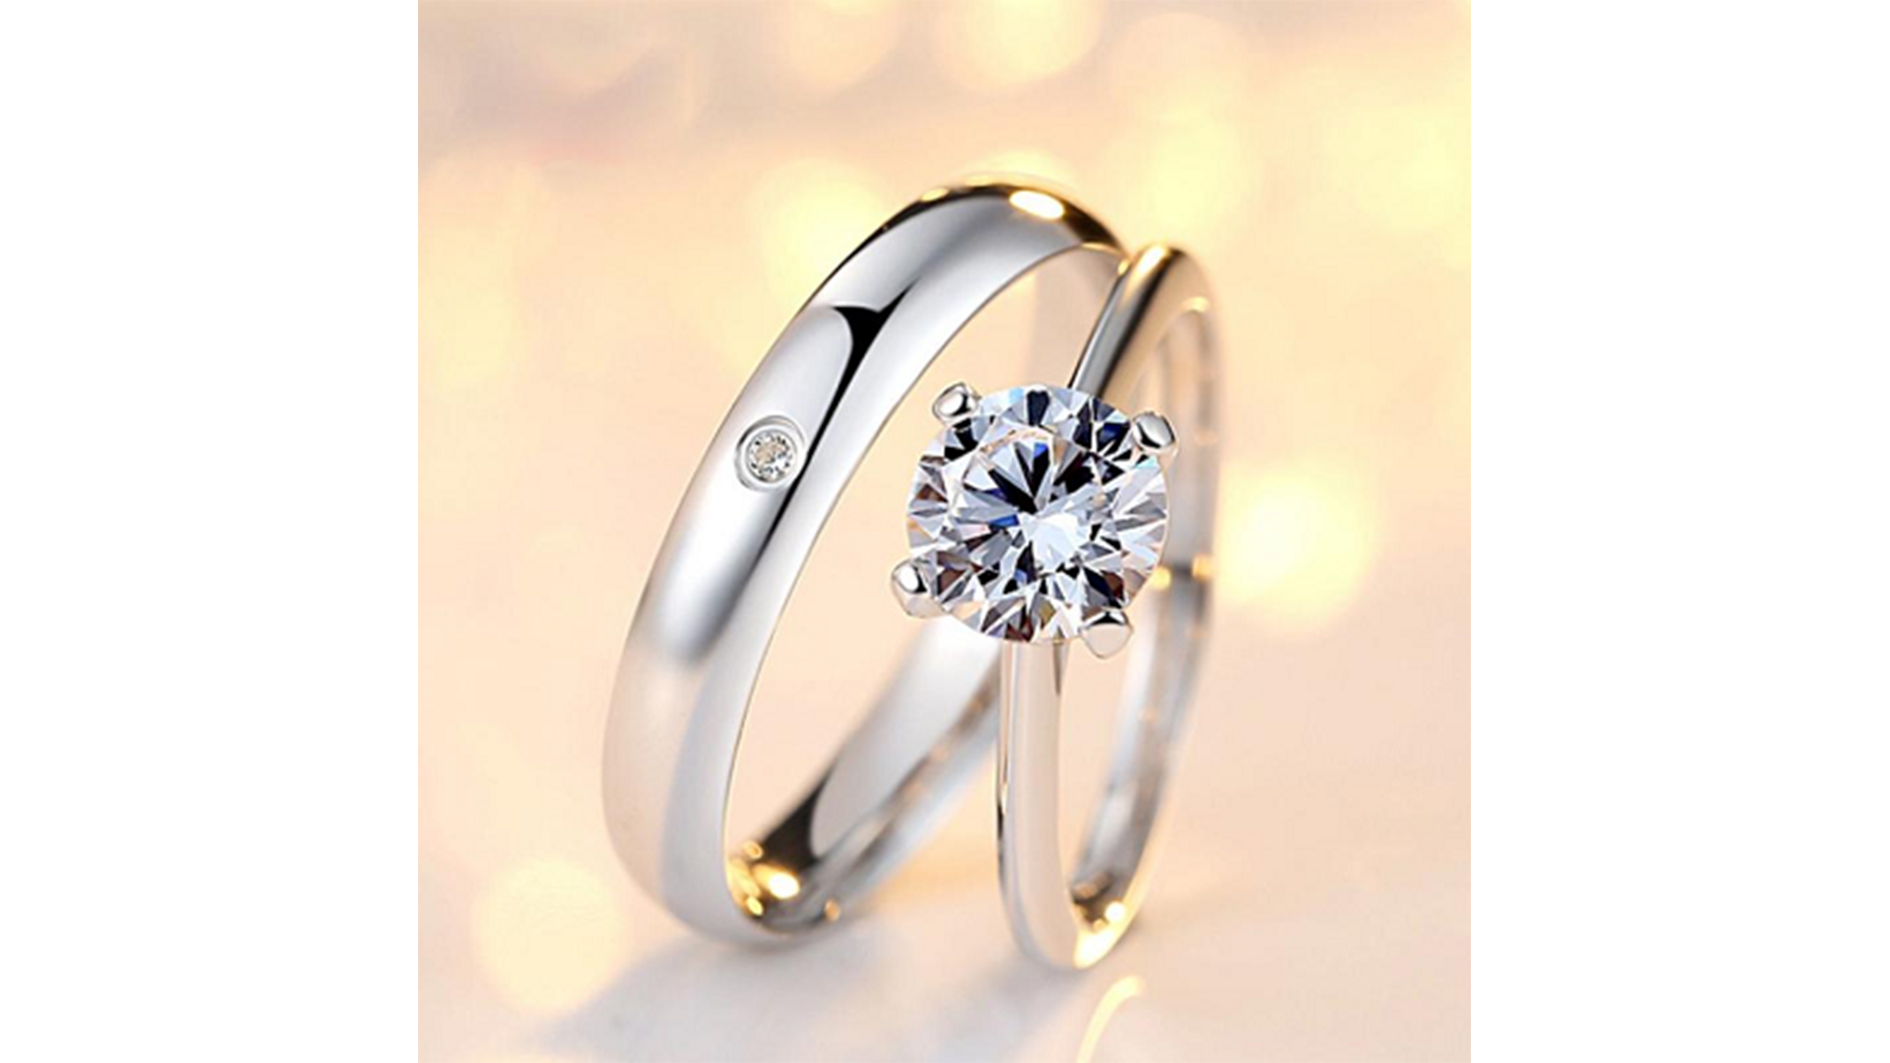 Bí quyết chọn được cặp nhẫn cưới hoàn hảo